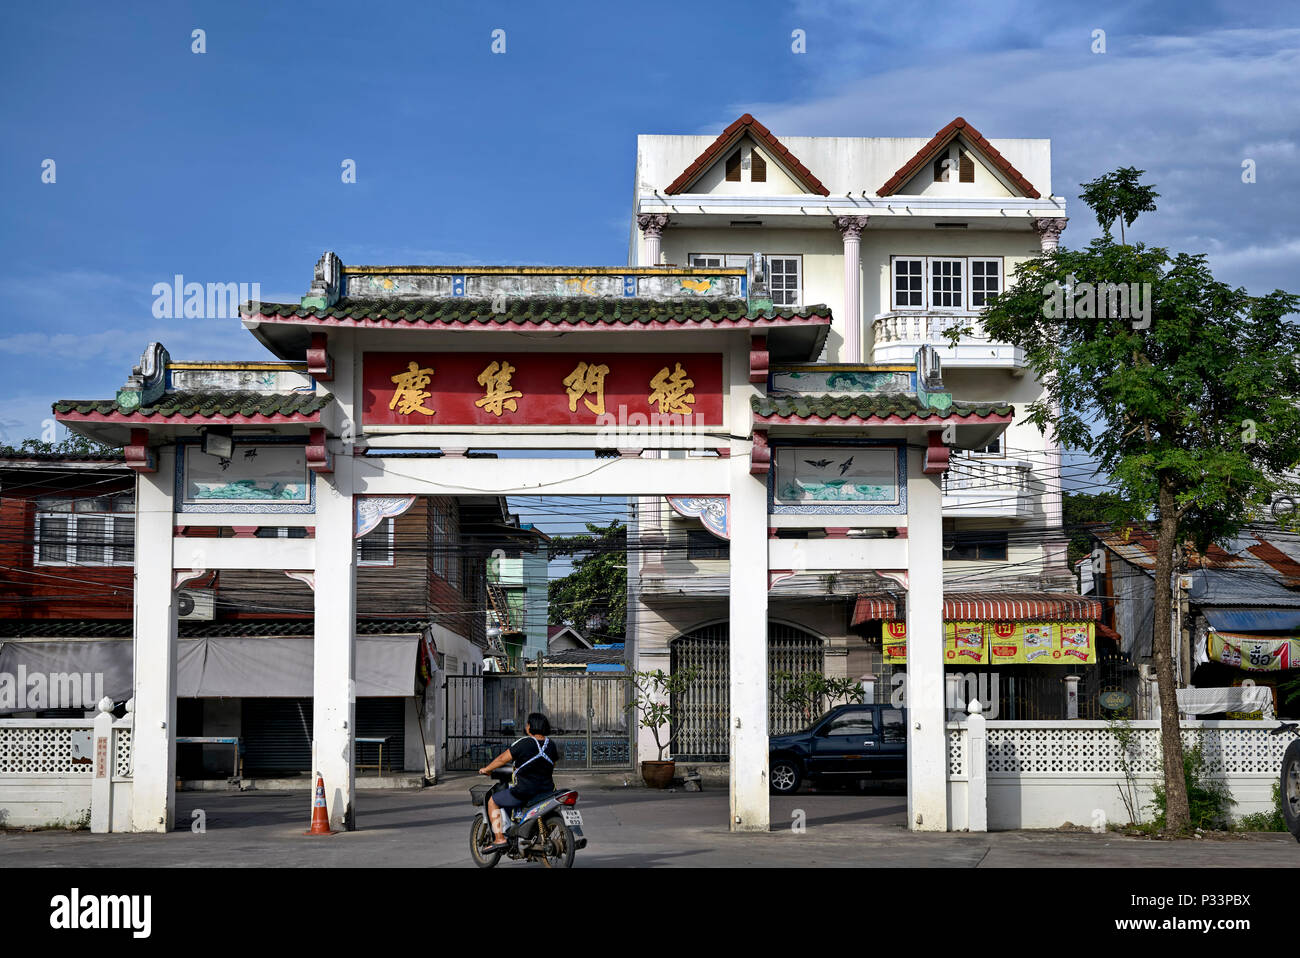 Chinatown, Thailand Stock Photo